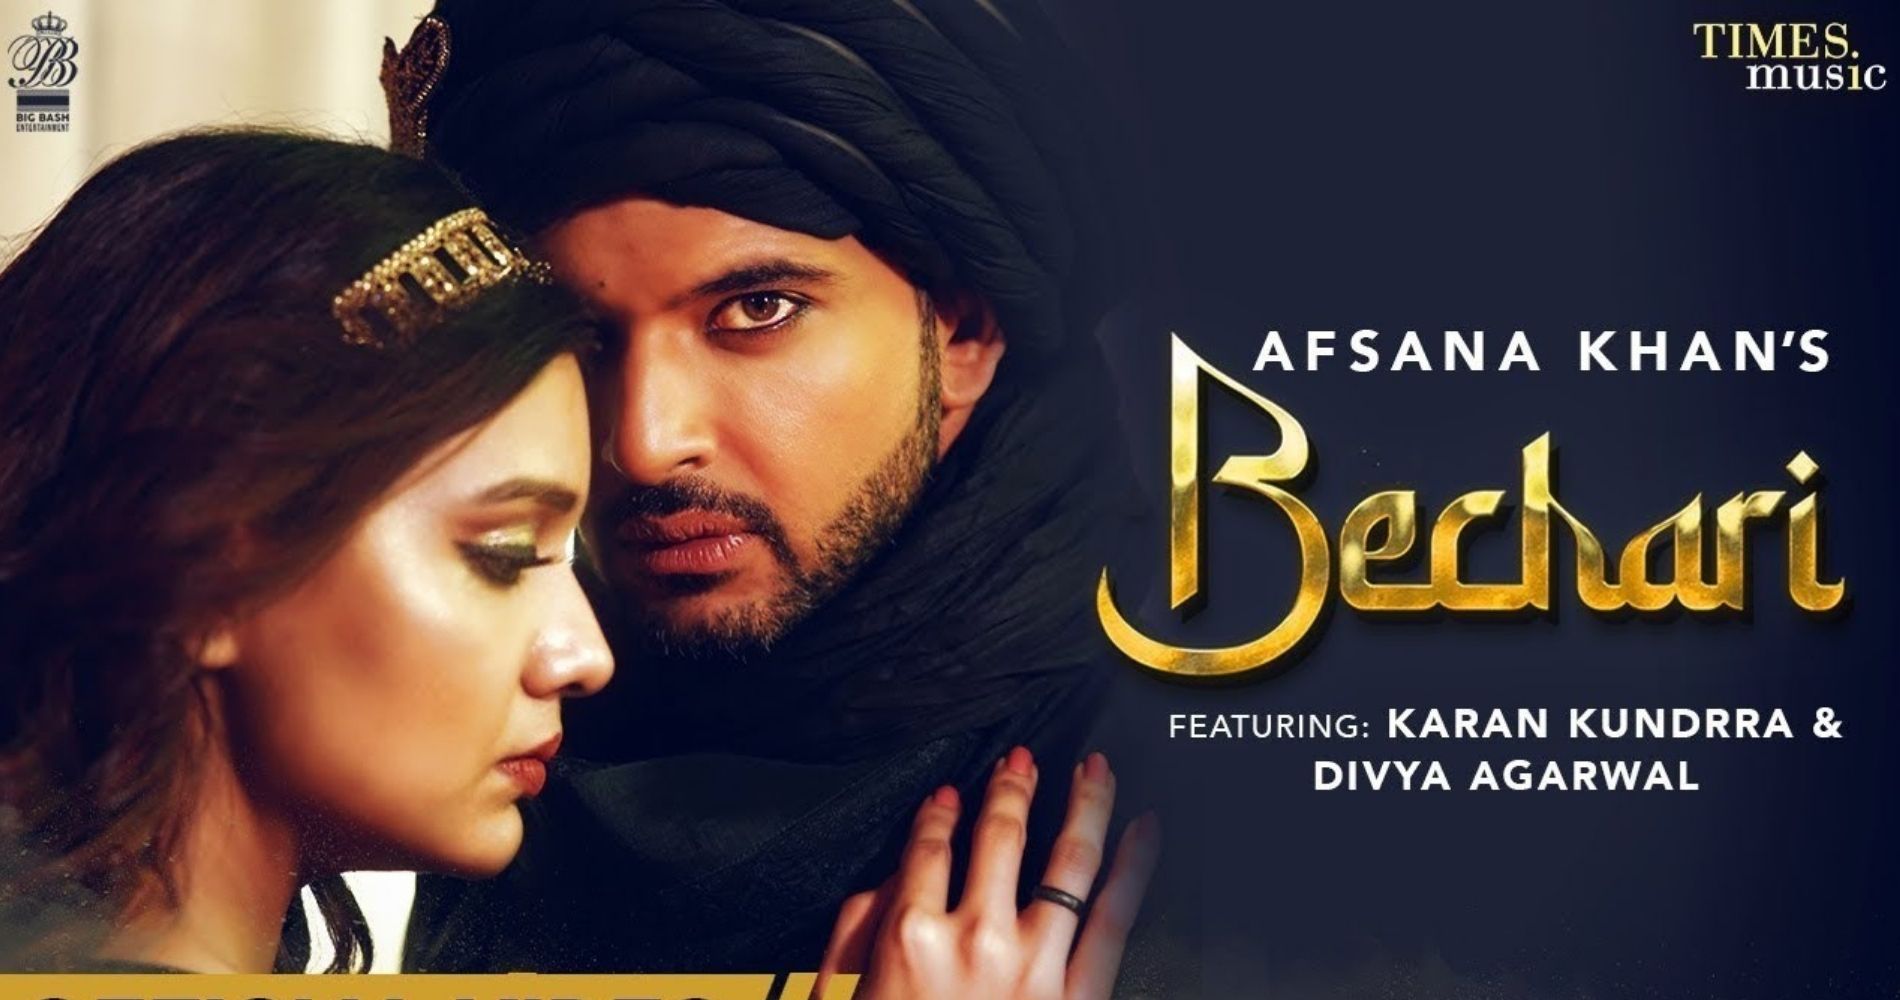 Singer Afsana Khan upcoming song 'Bechari' featuring Karan Kundra and